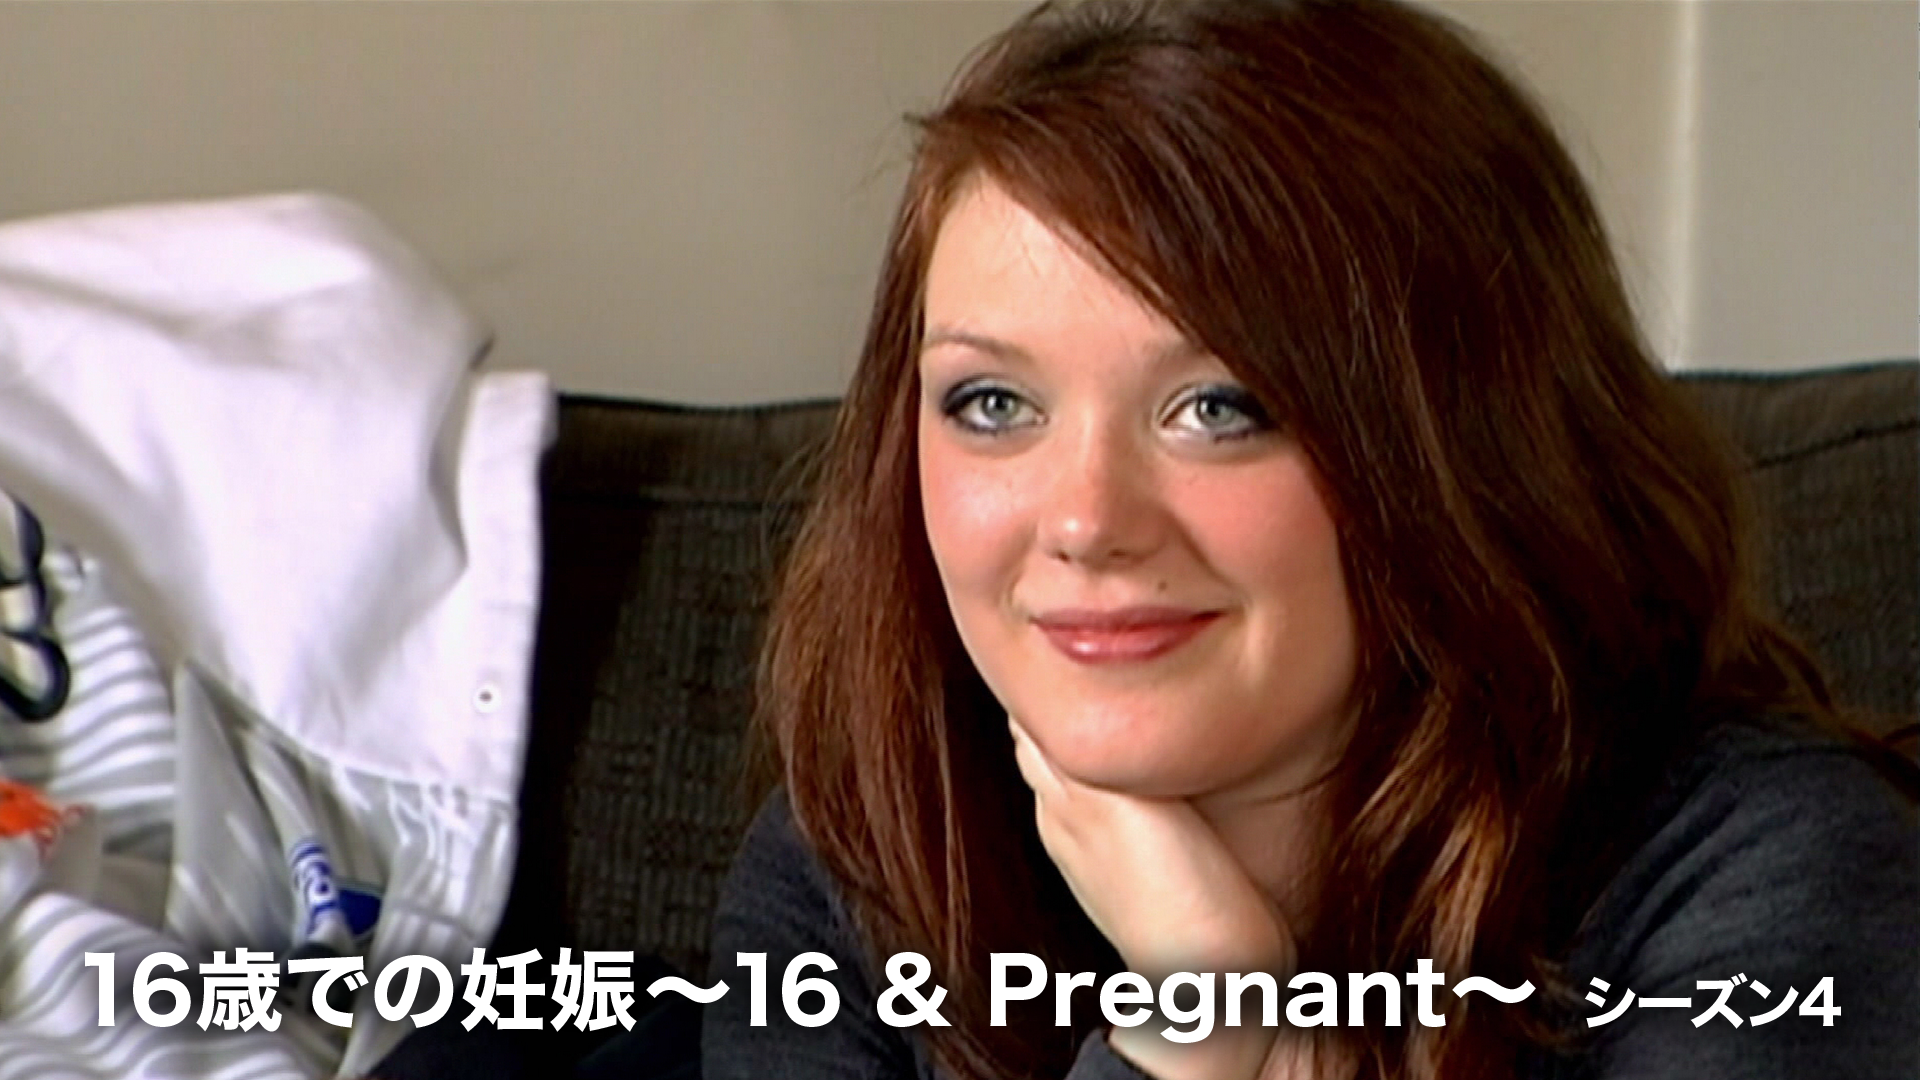 16歳での妊娠 ～16 & Pregnant～ シーズン4の動画 - 16歳での妊娠 ～16 & Pregnant～ シーズン1